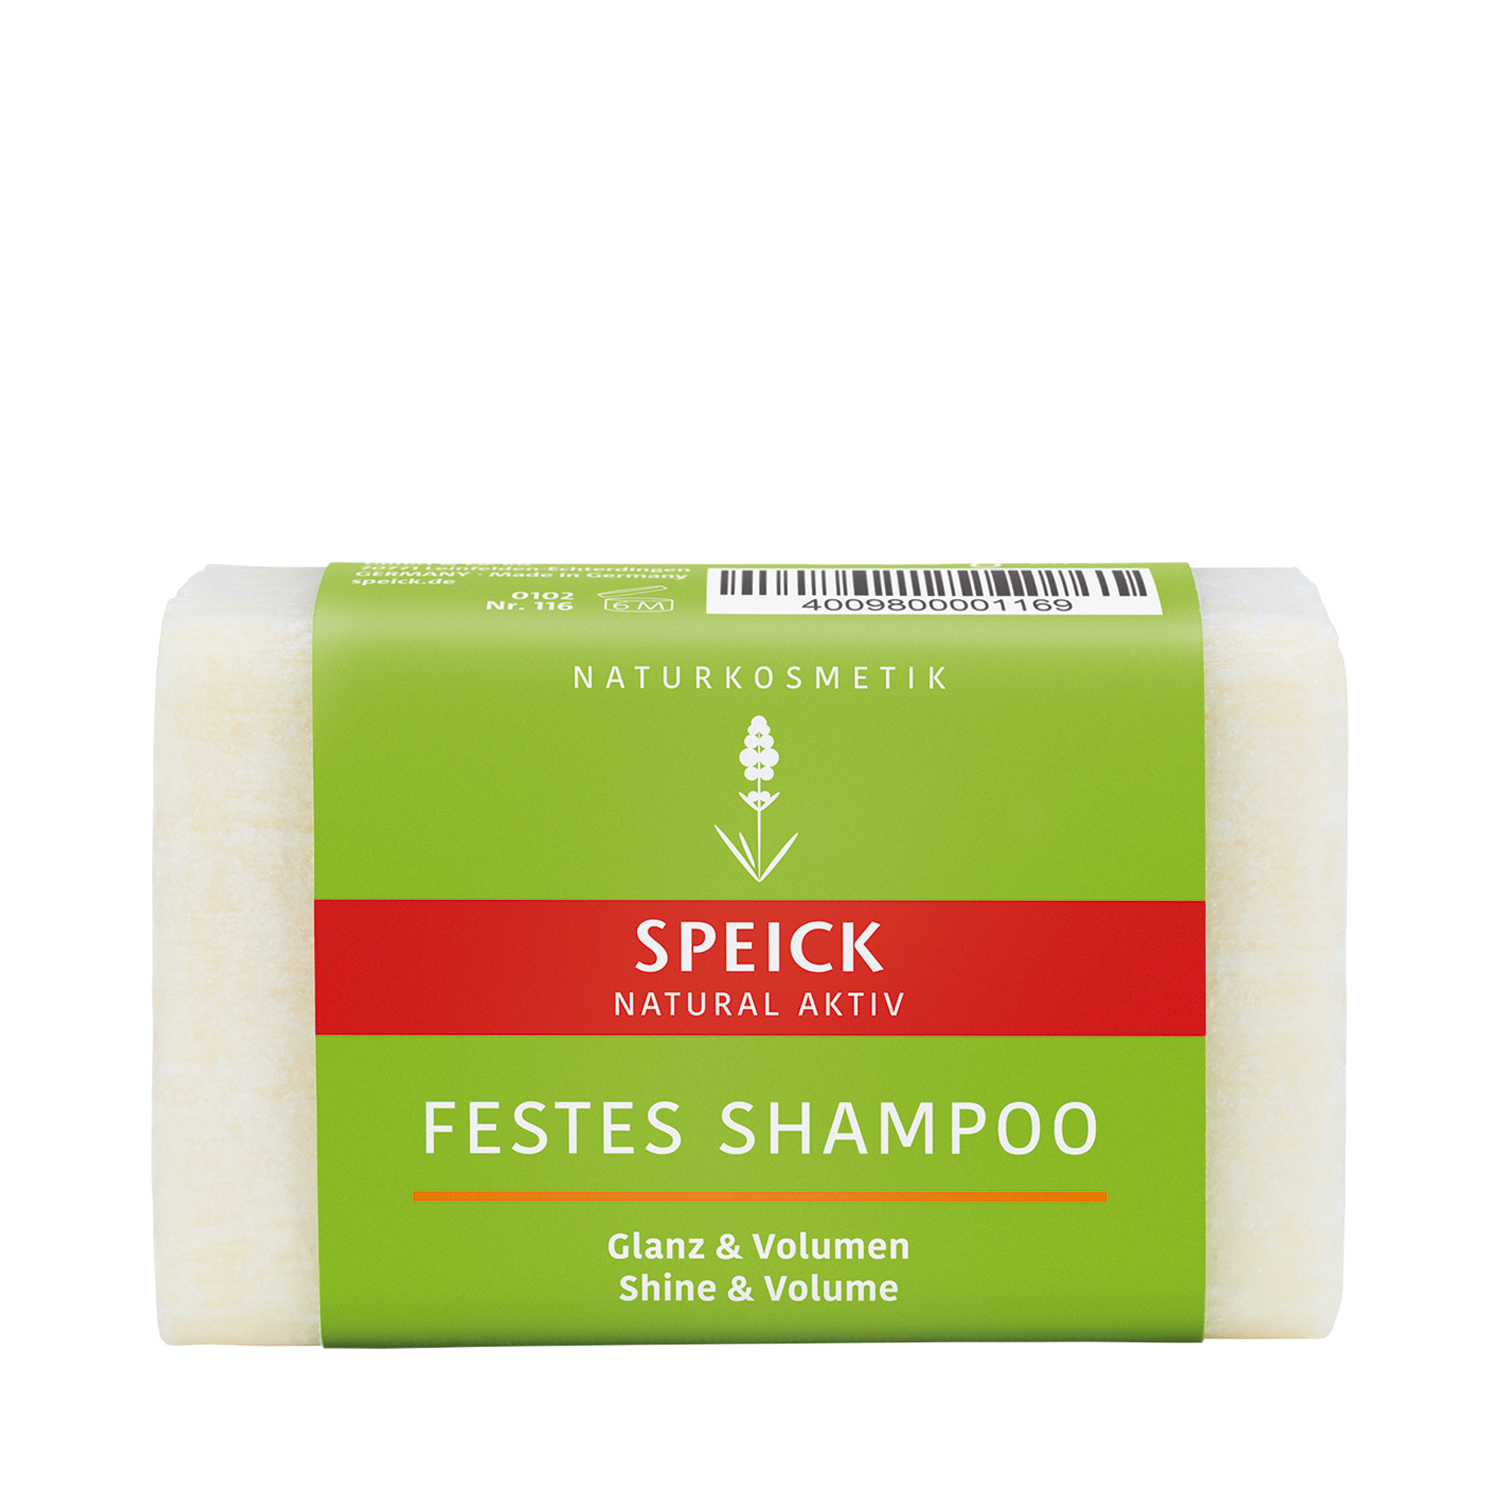 Speick - Natural Aktiv - Festes Shampoo Glanz & Volumen - Haarseife für normales Haar